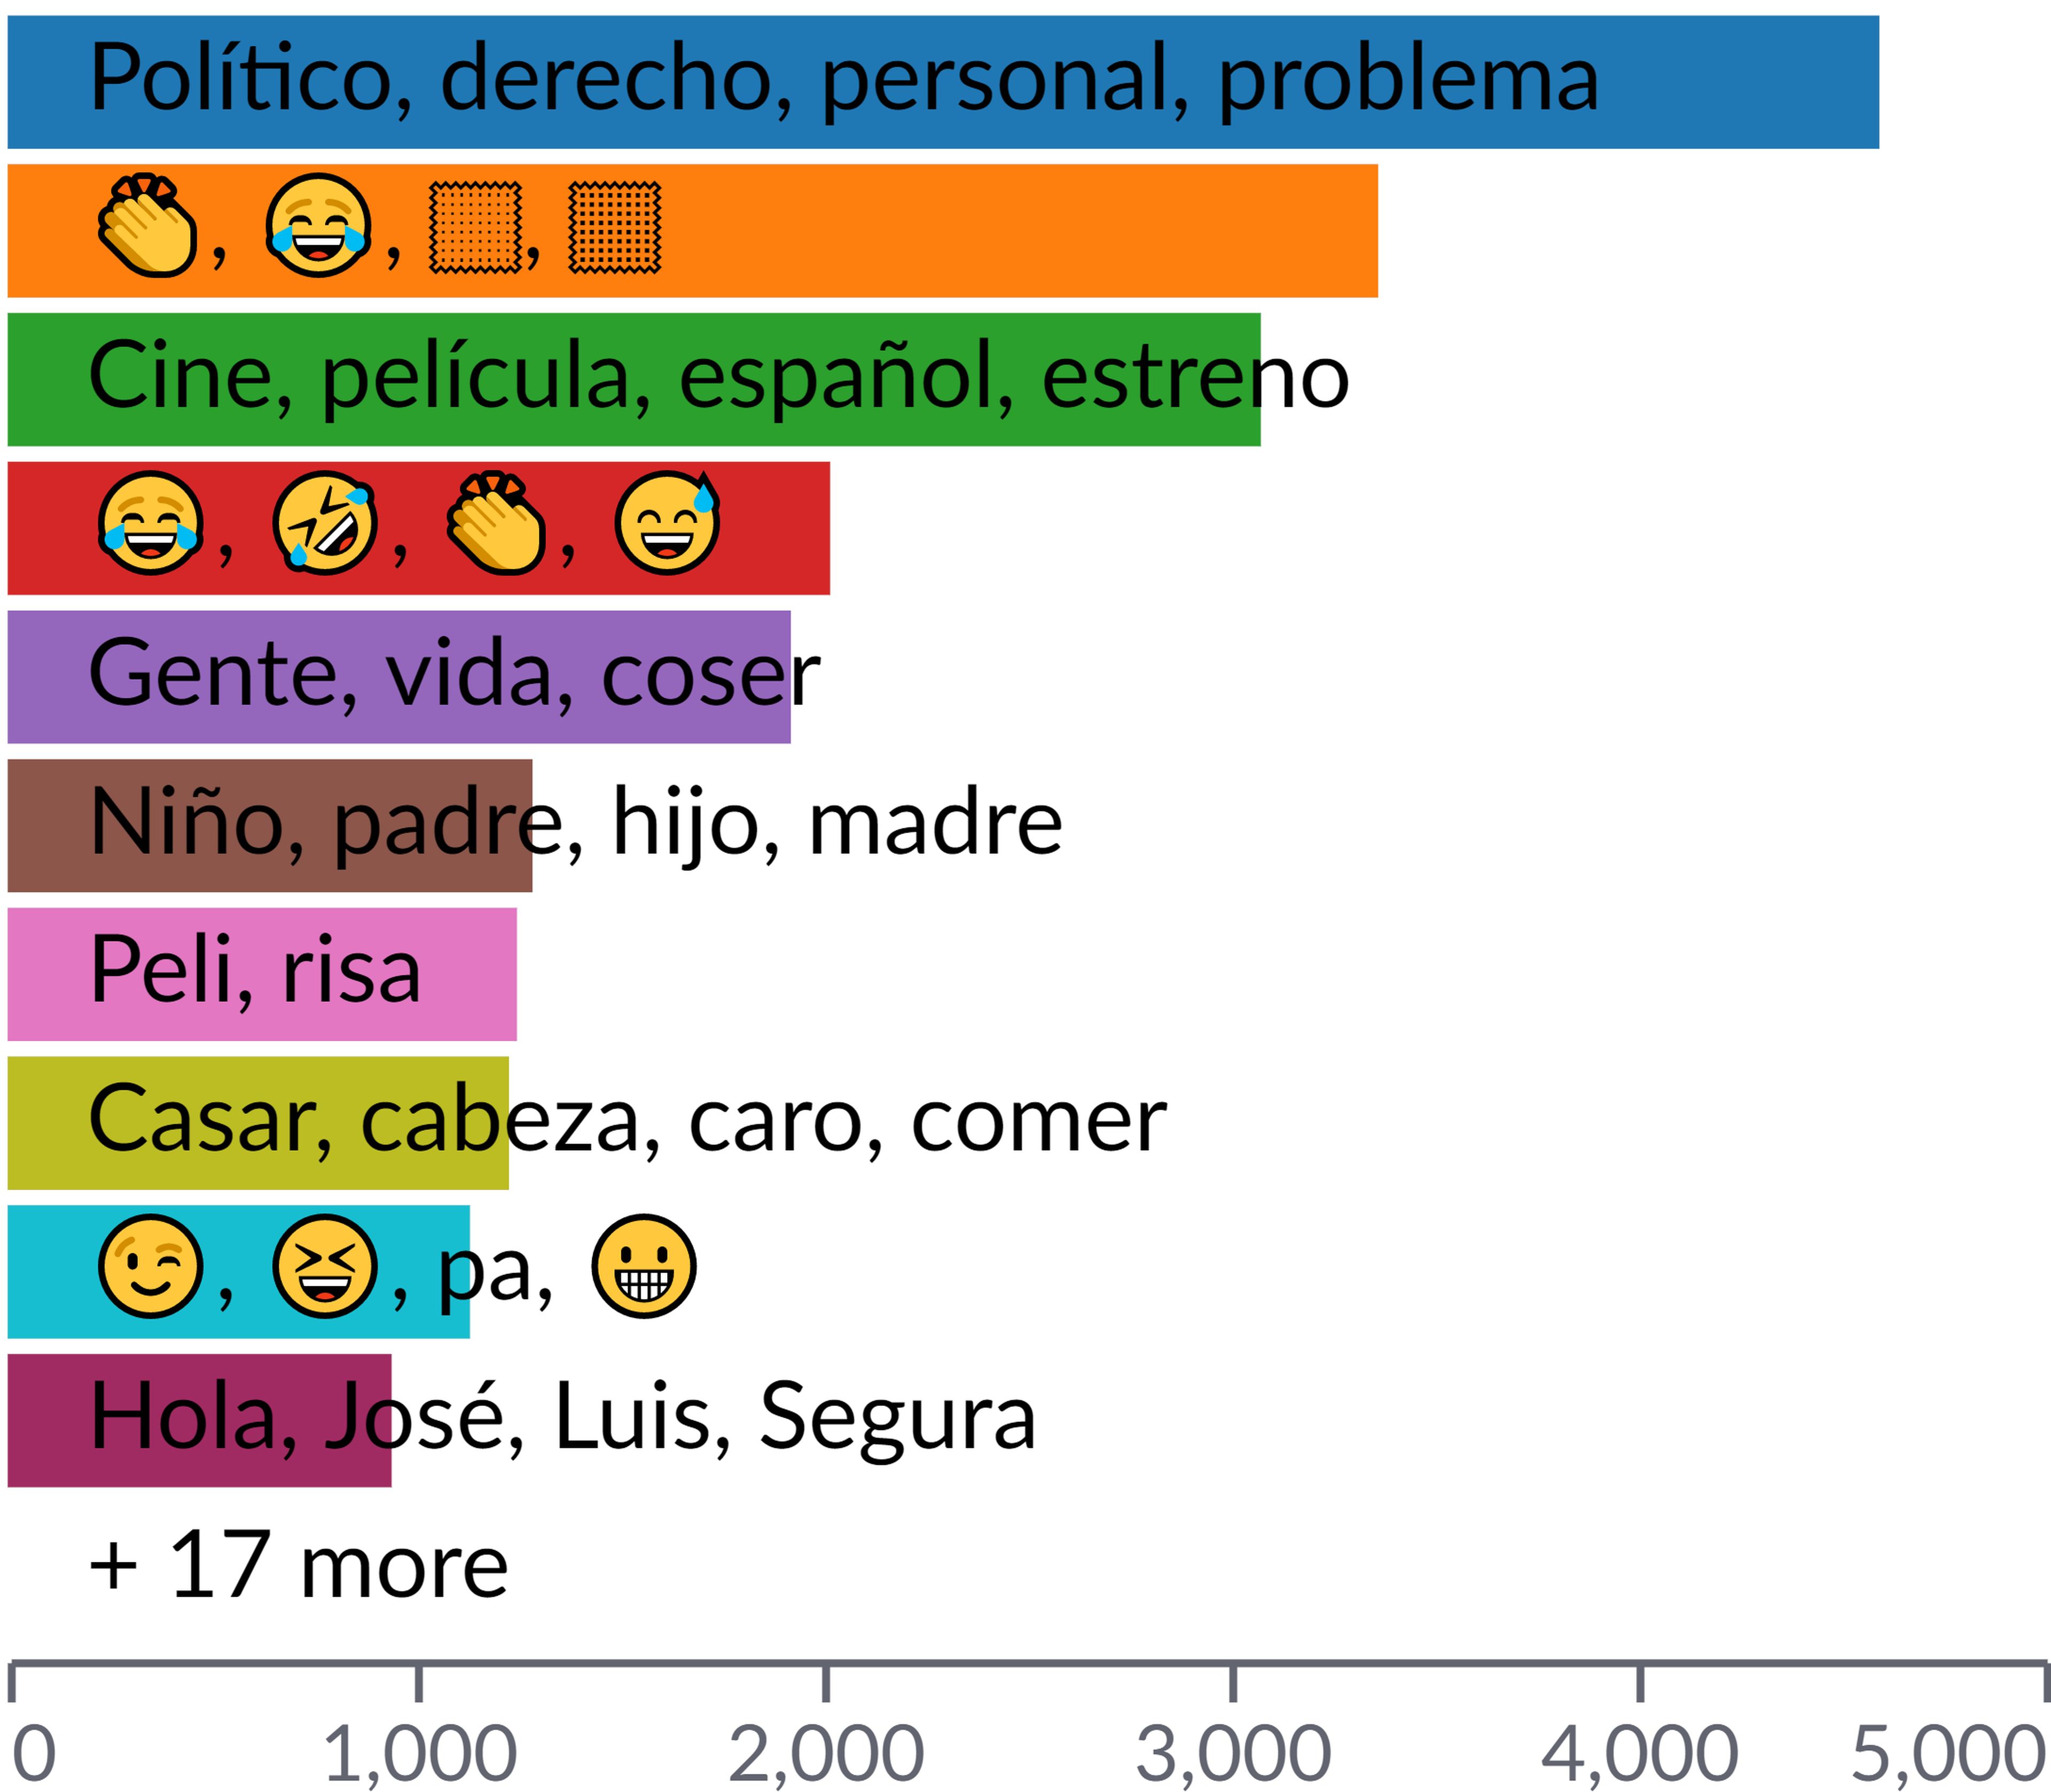 Ranking de temas tratados en las menciones a Santiago Segura enTwitter.